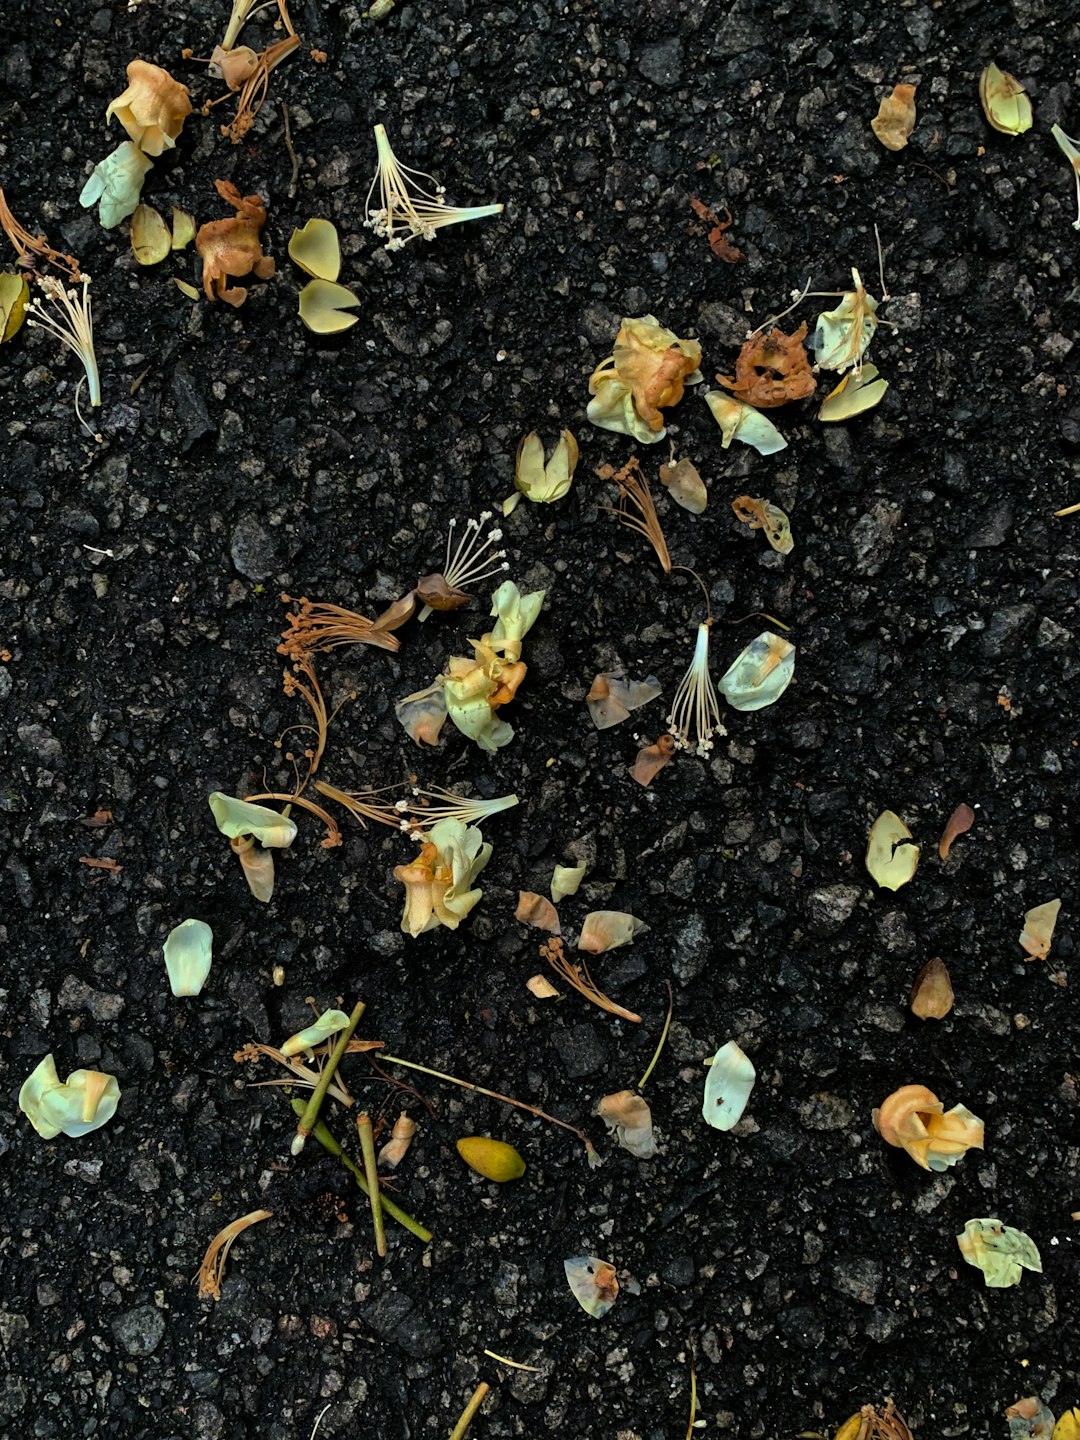 dried leaves on black soil